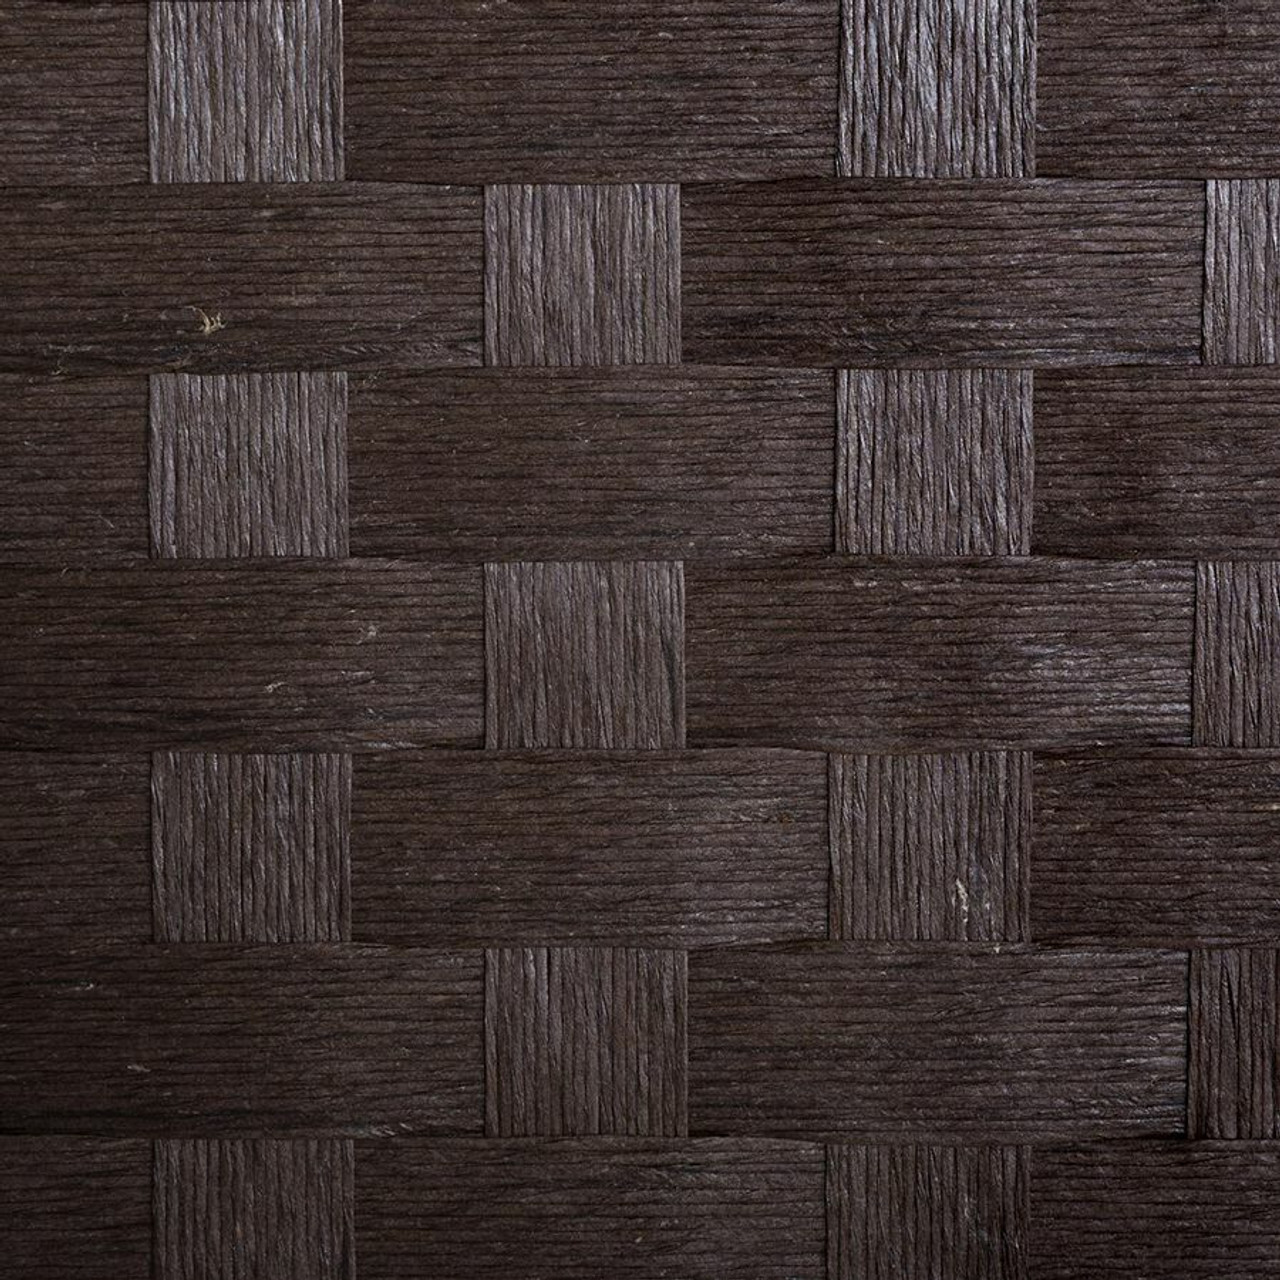 Room Divider 6 Panel Weave Design Fiber Ivory, Black, Brown, or Beige Color